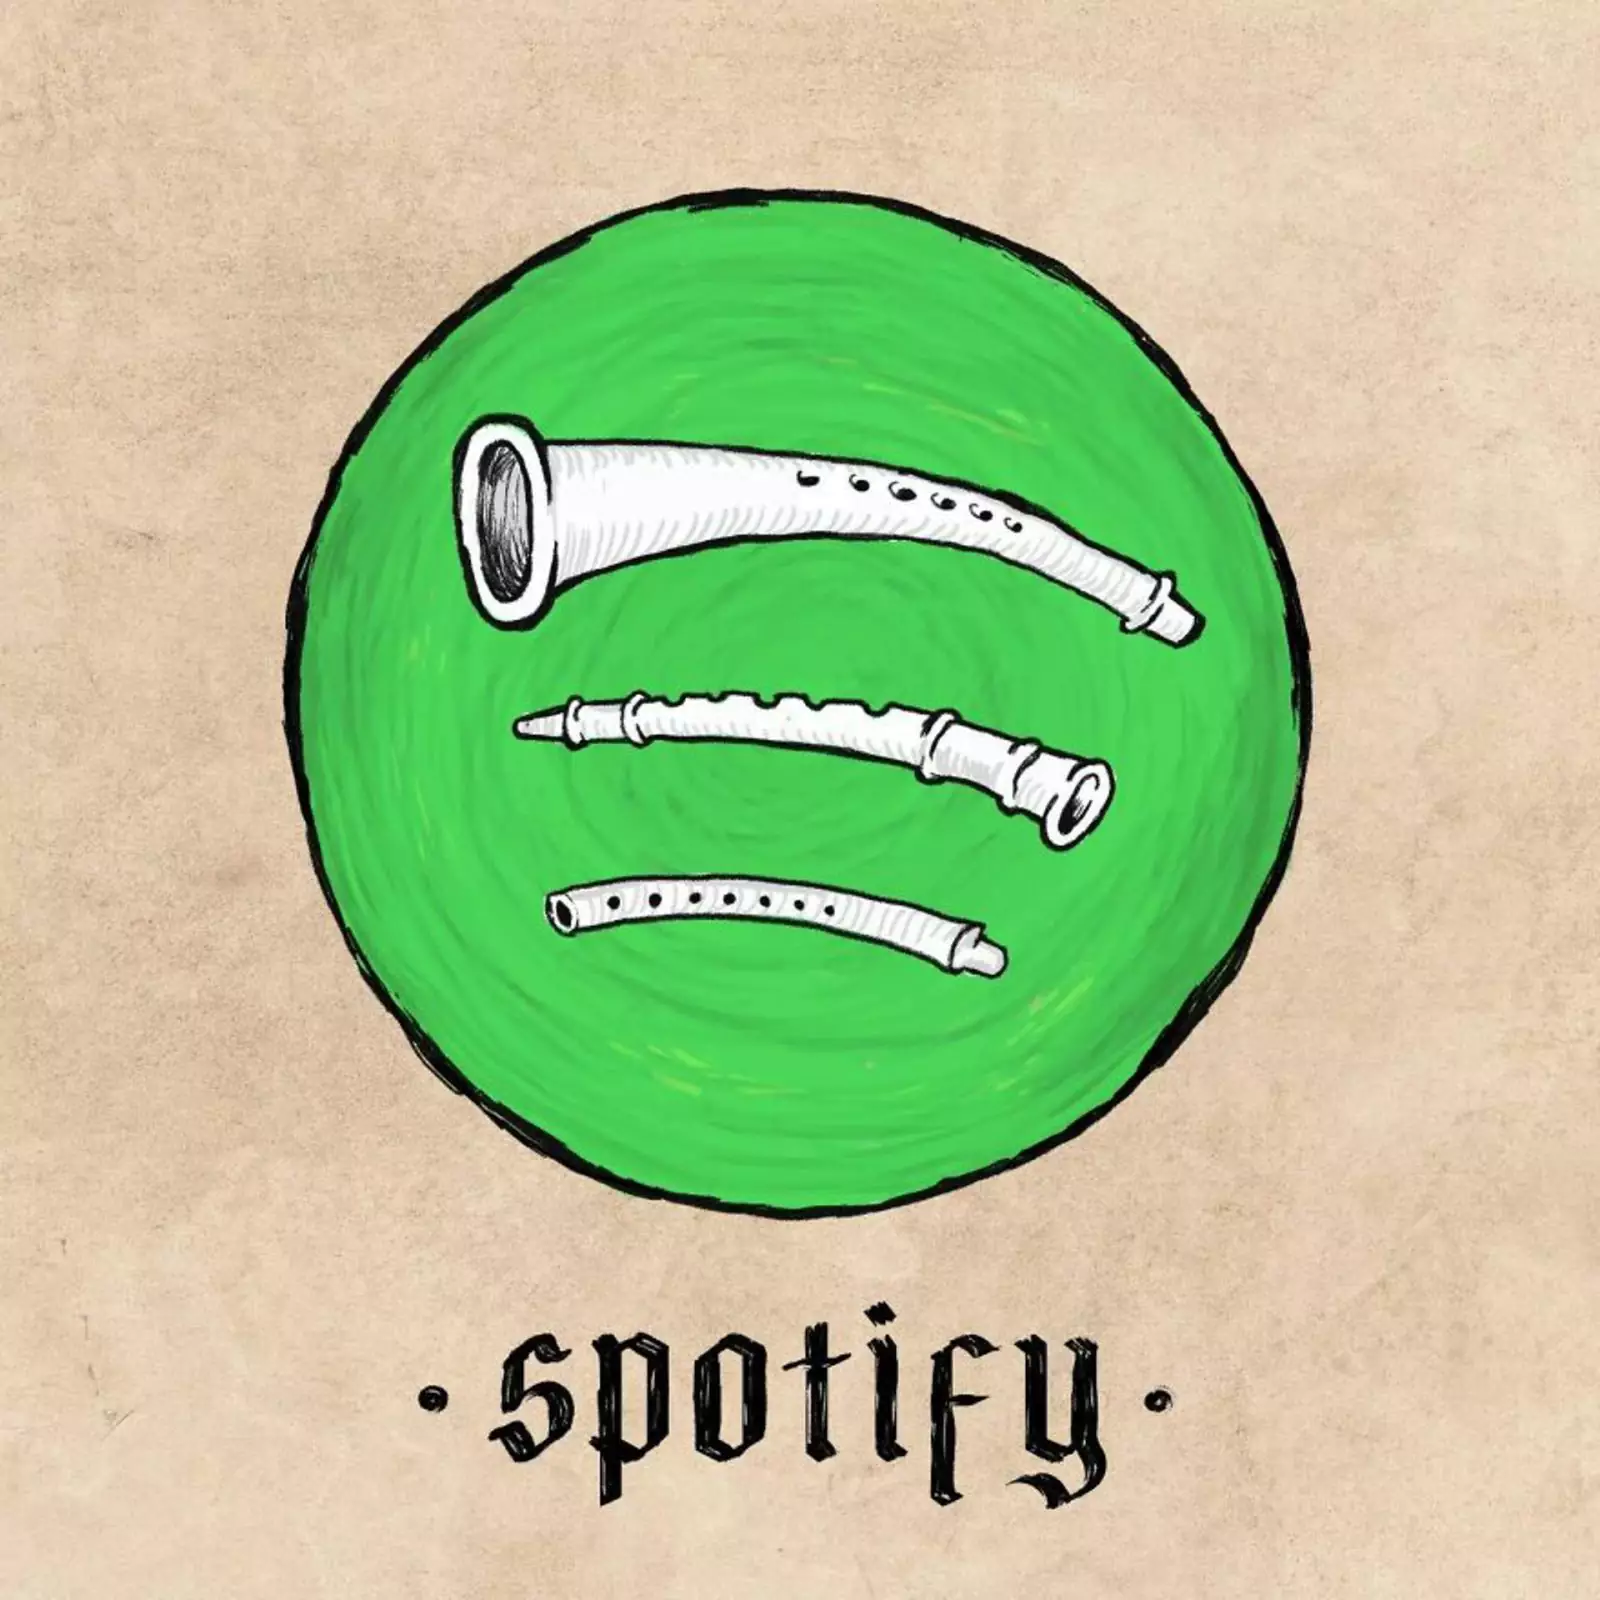 Spotify.